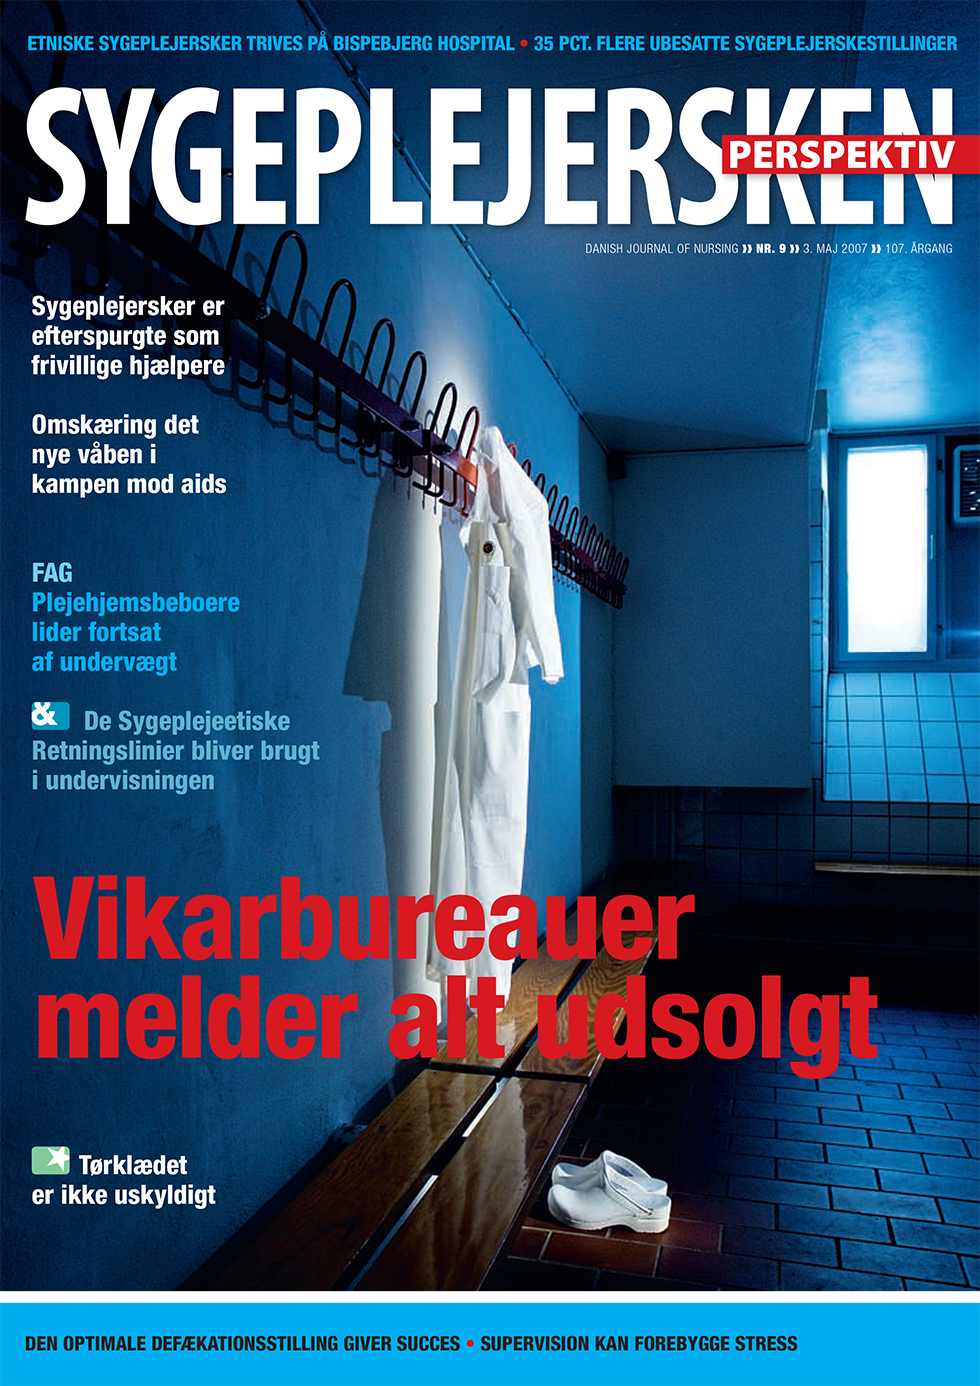 Sygeplejersken_2007_09 - magasinforsiden